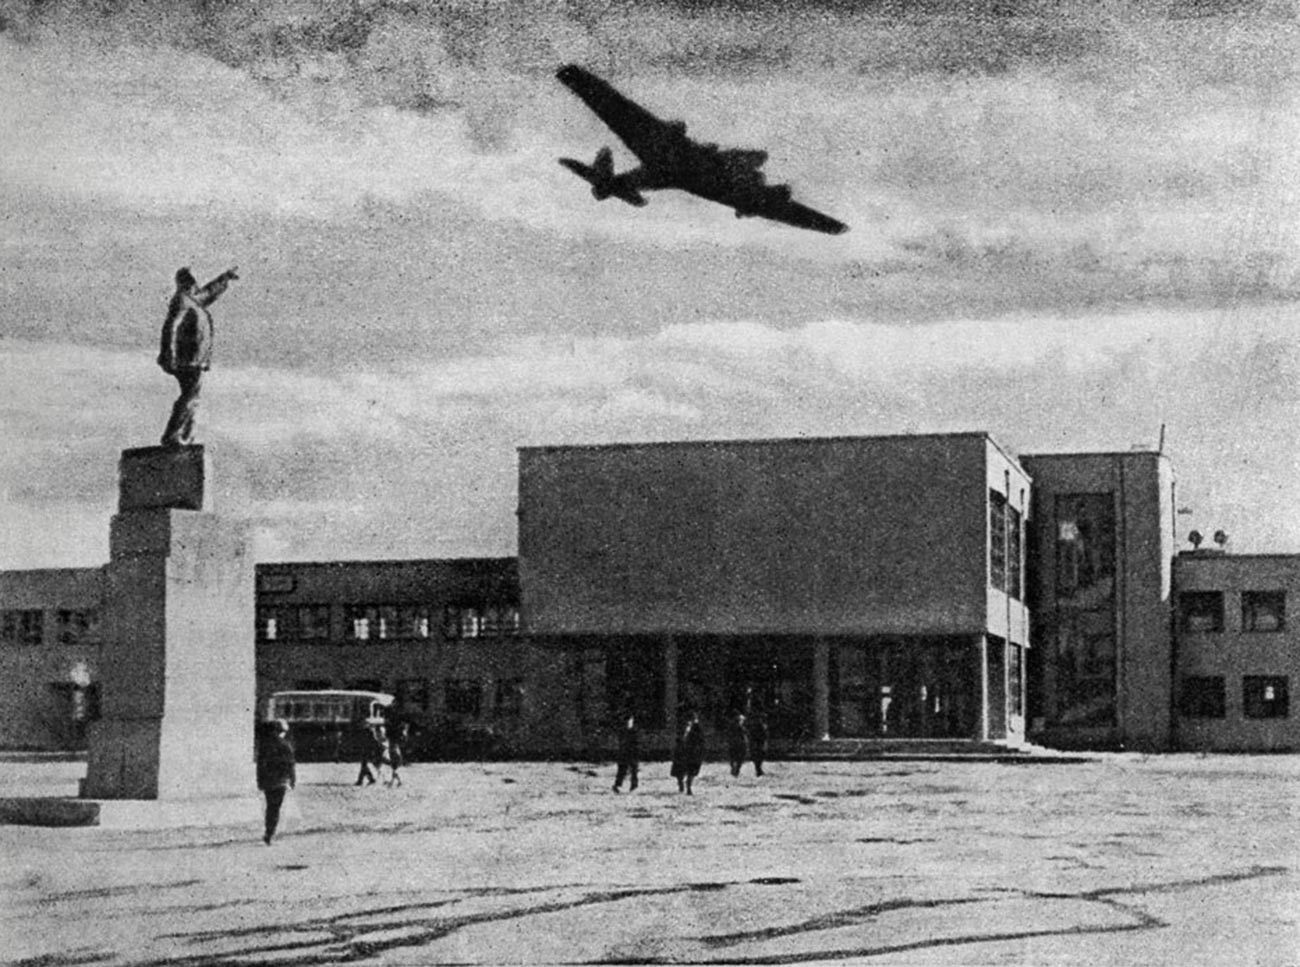 ホドィンスコエ・ポーレ空港のANT-14飛行機、1934年